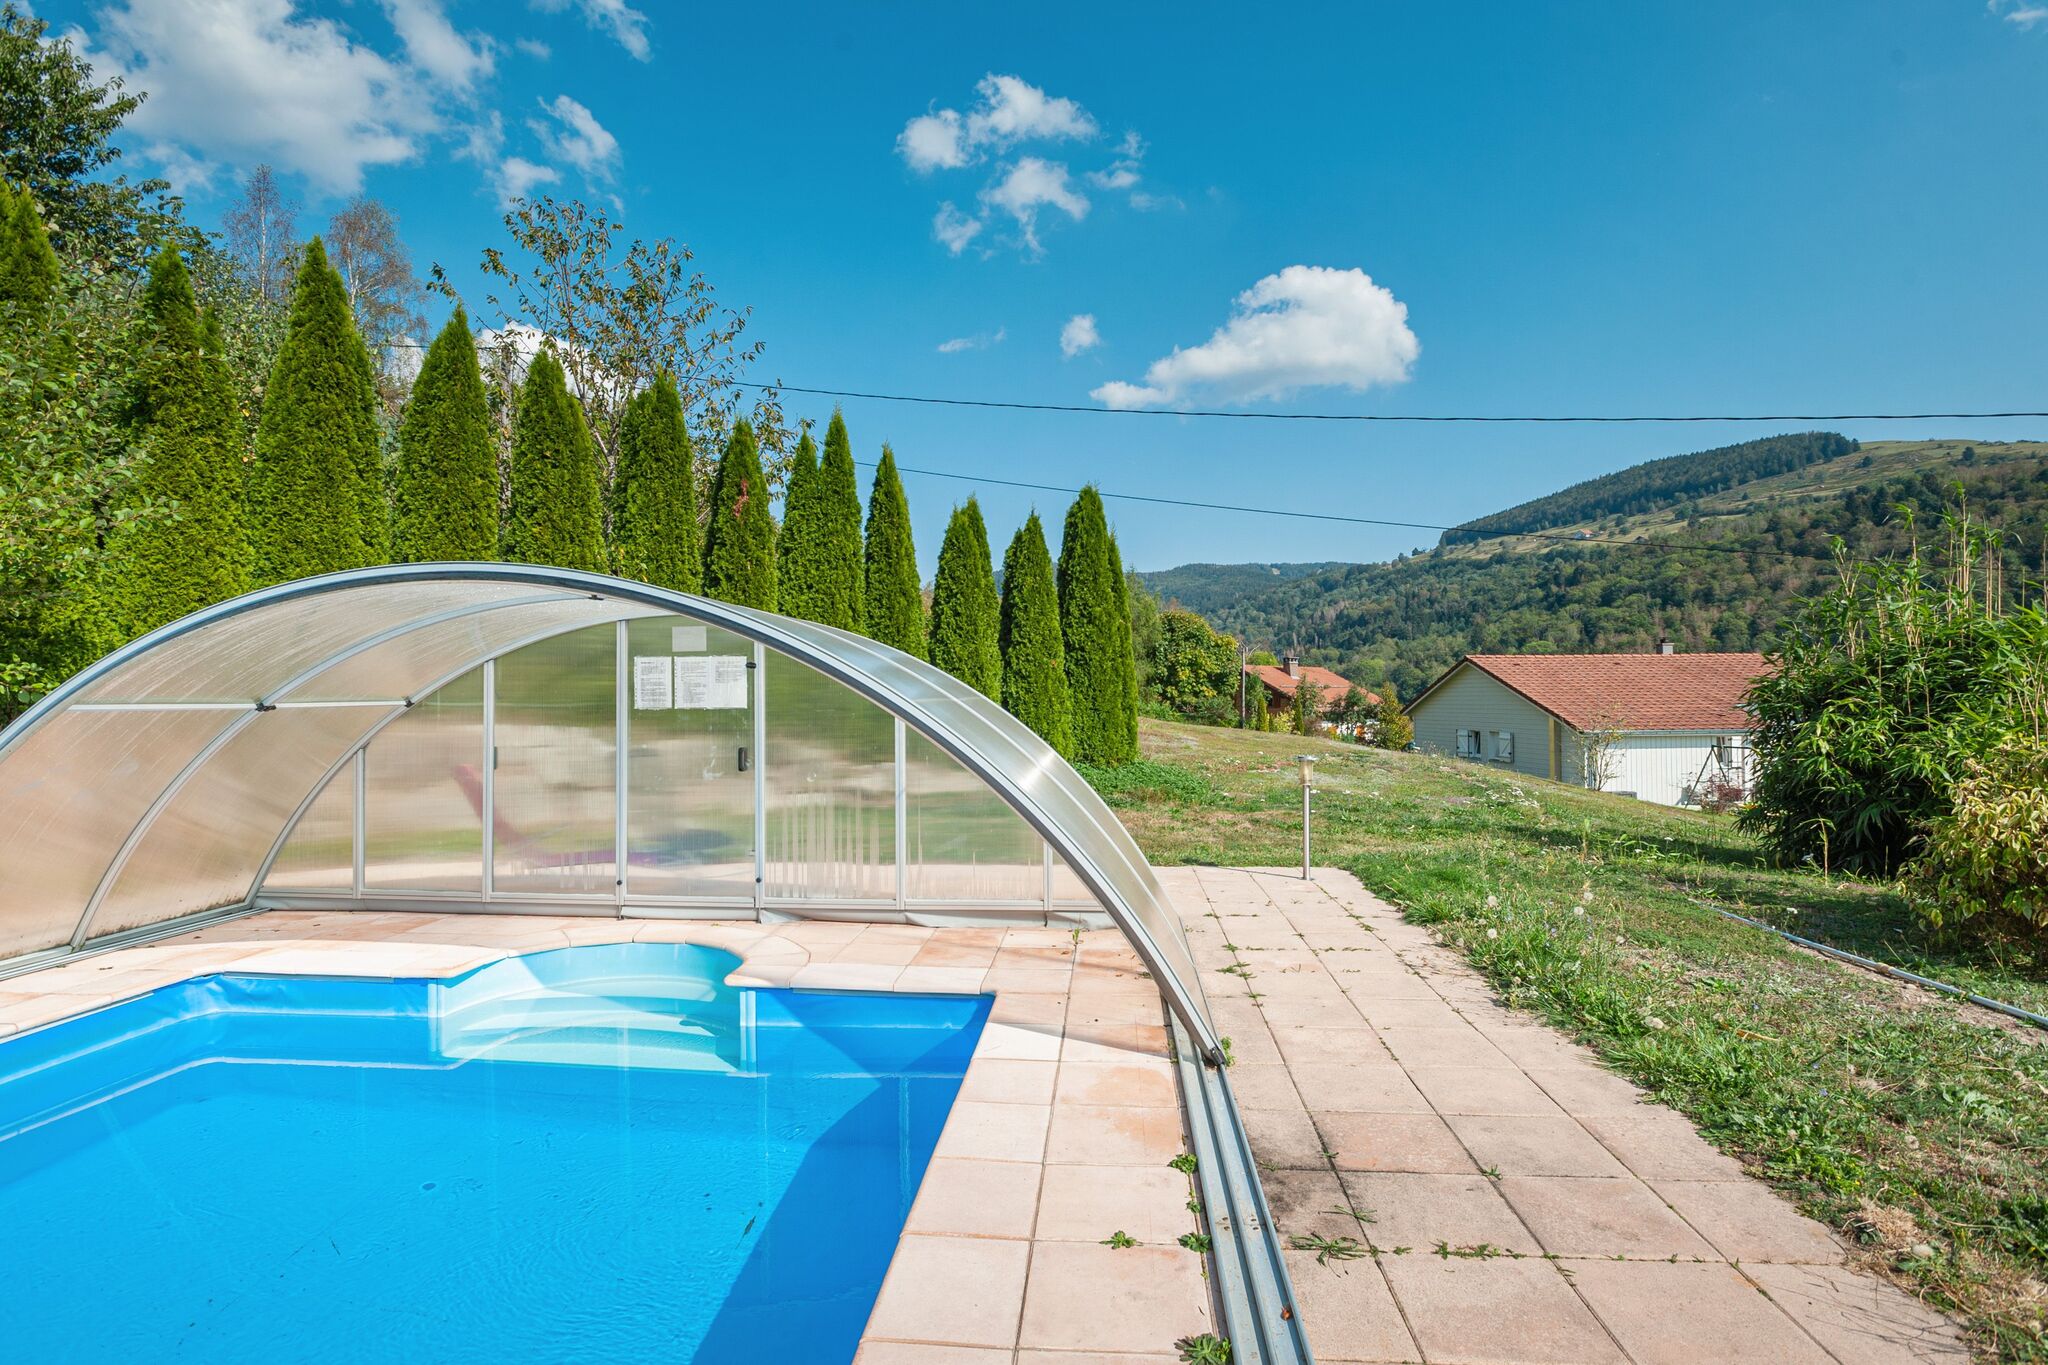 Prachtig modern chalet nabij La Bresse, verwarmd zwembad, rolstoel toegangkelijk